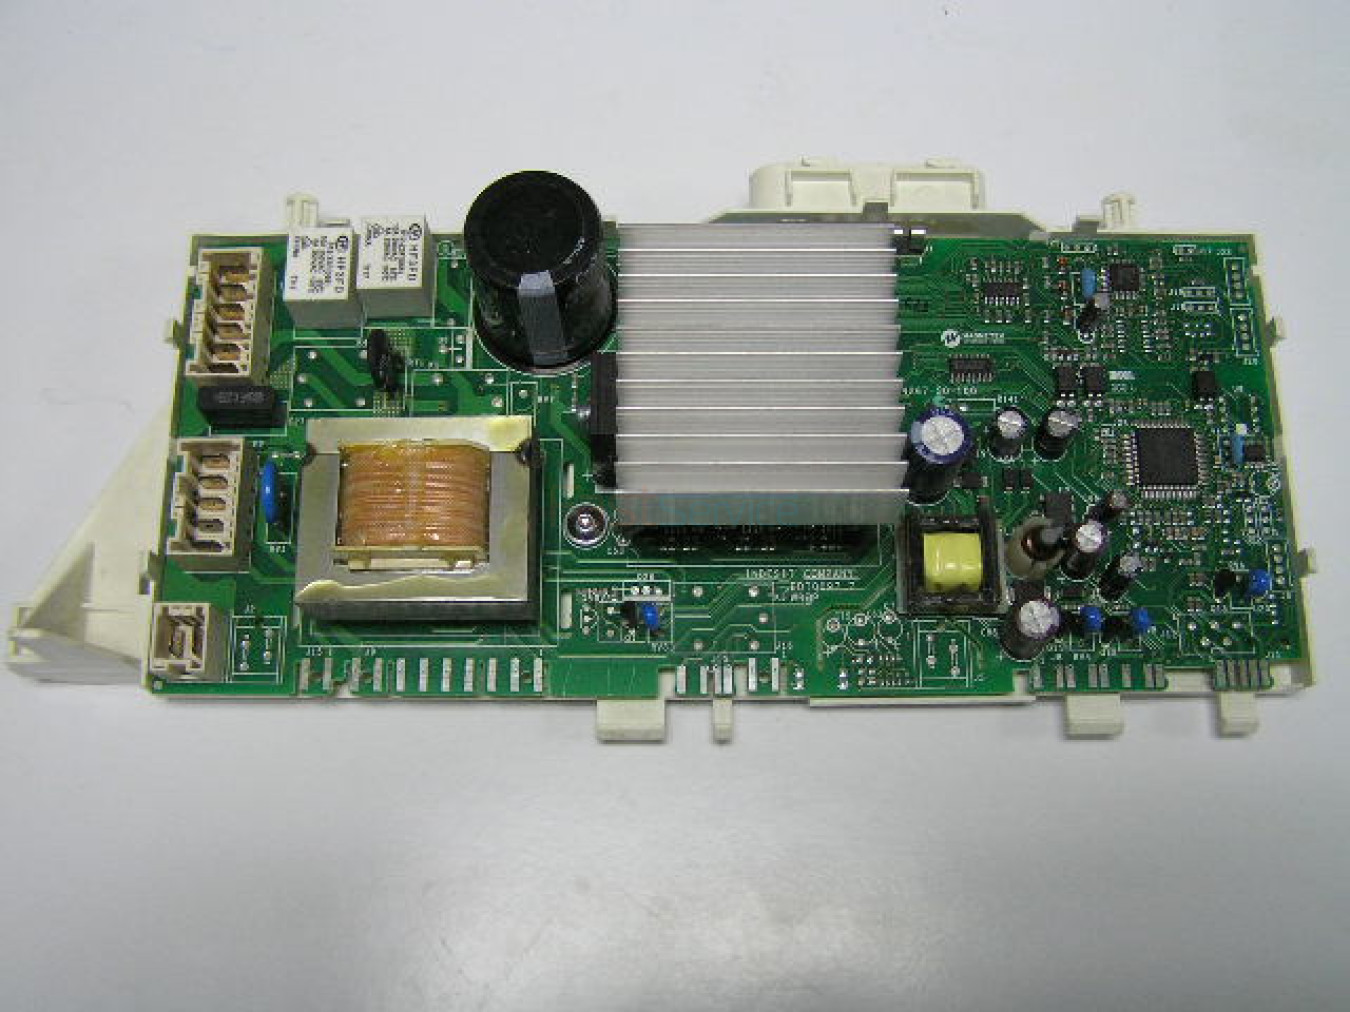 C00254530 Модуль управления б/у СМА INDESIT ARISTON 3-фазный EVO-II